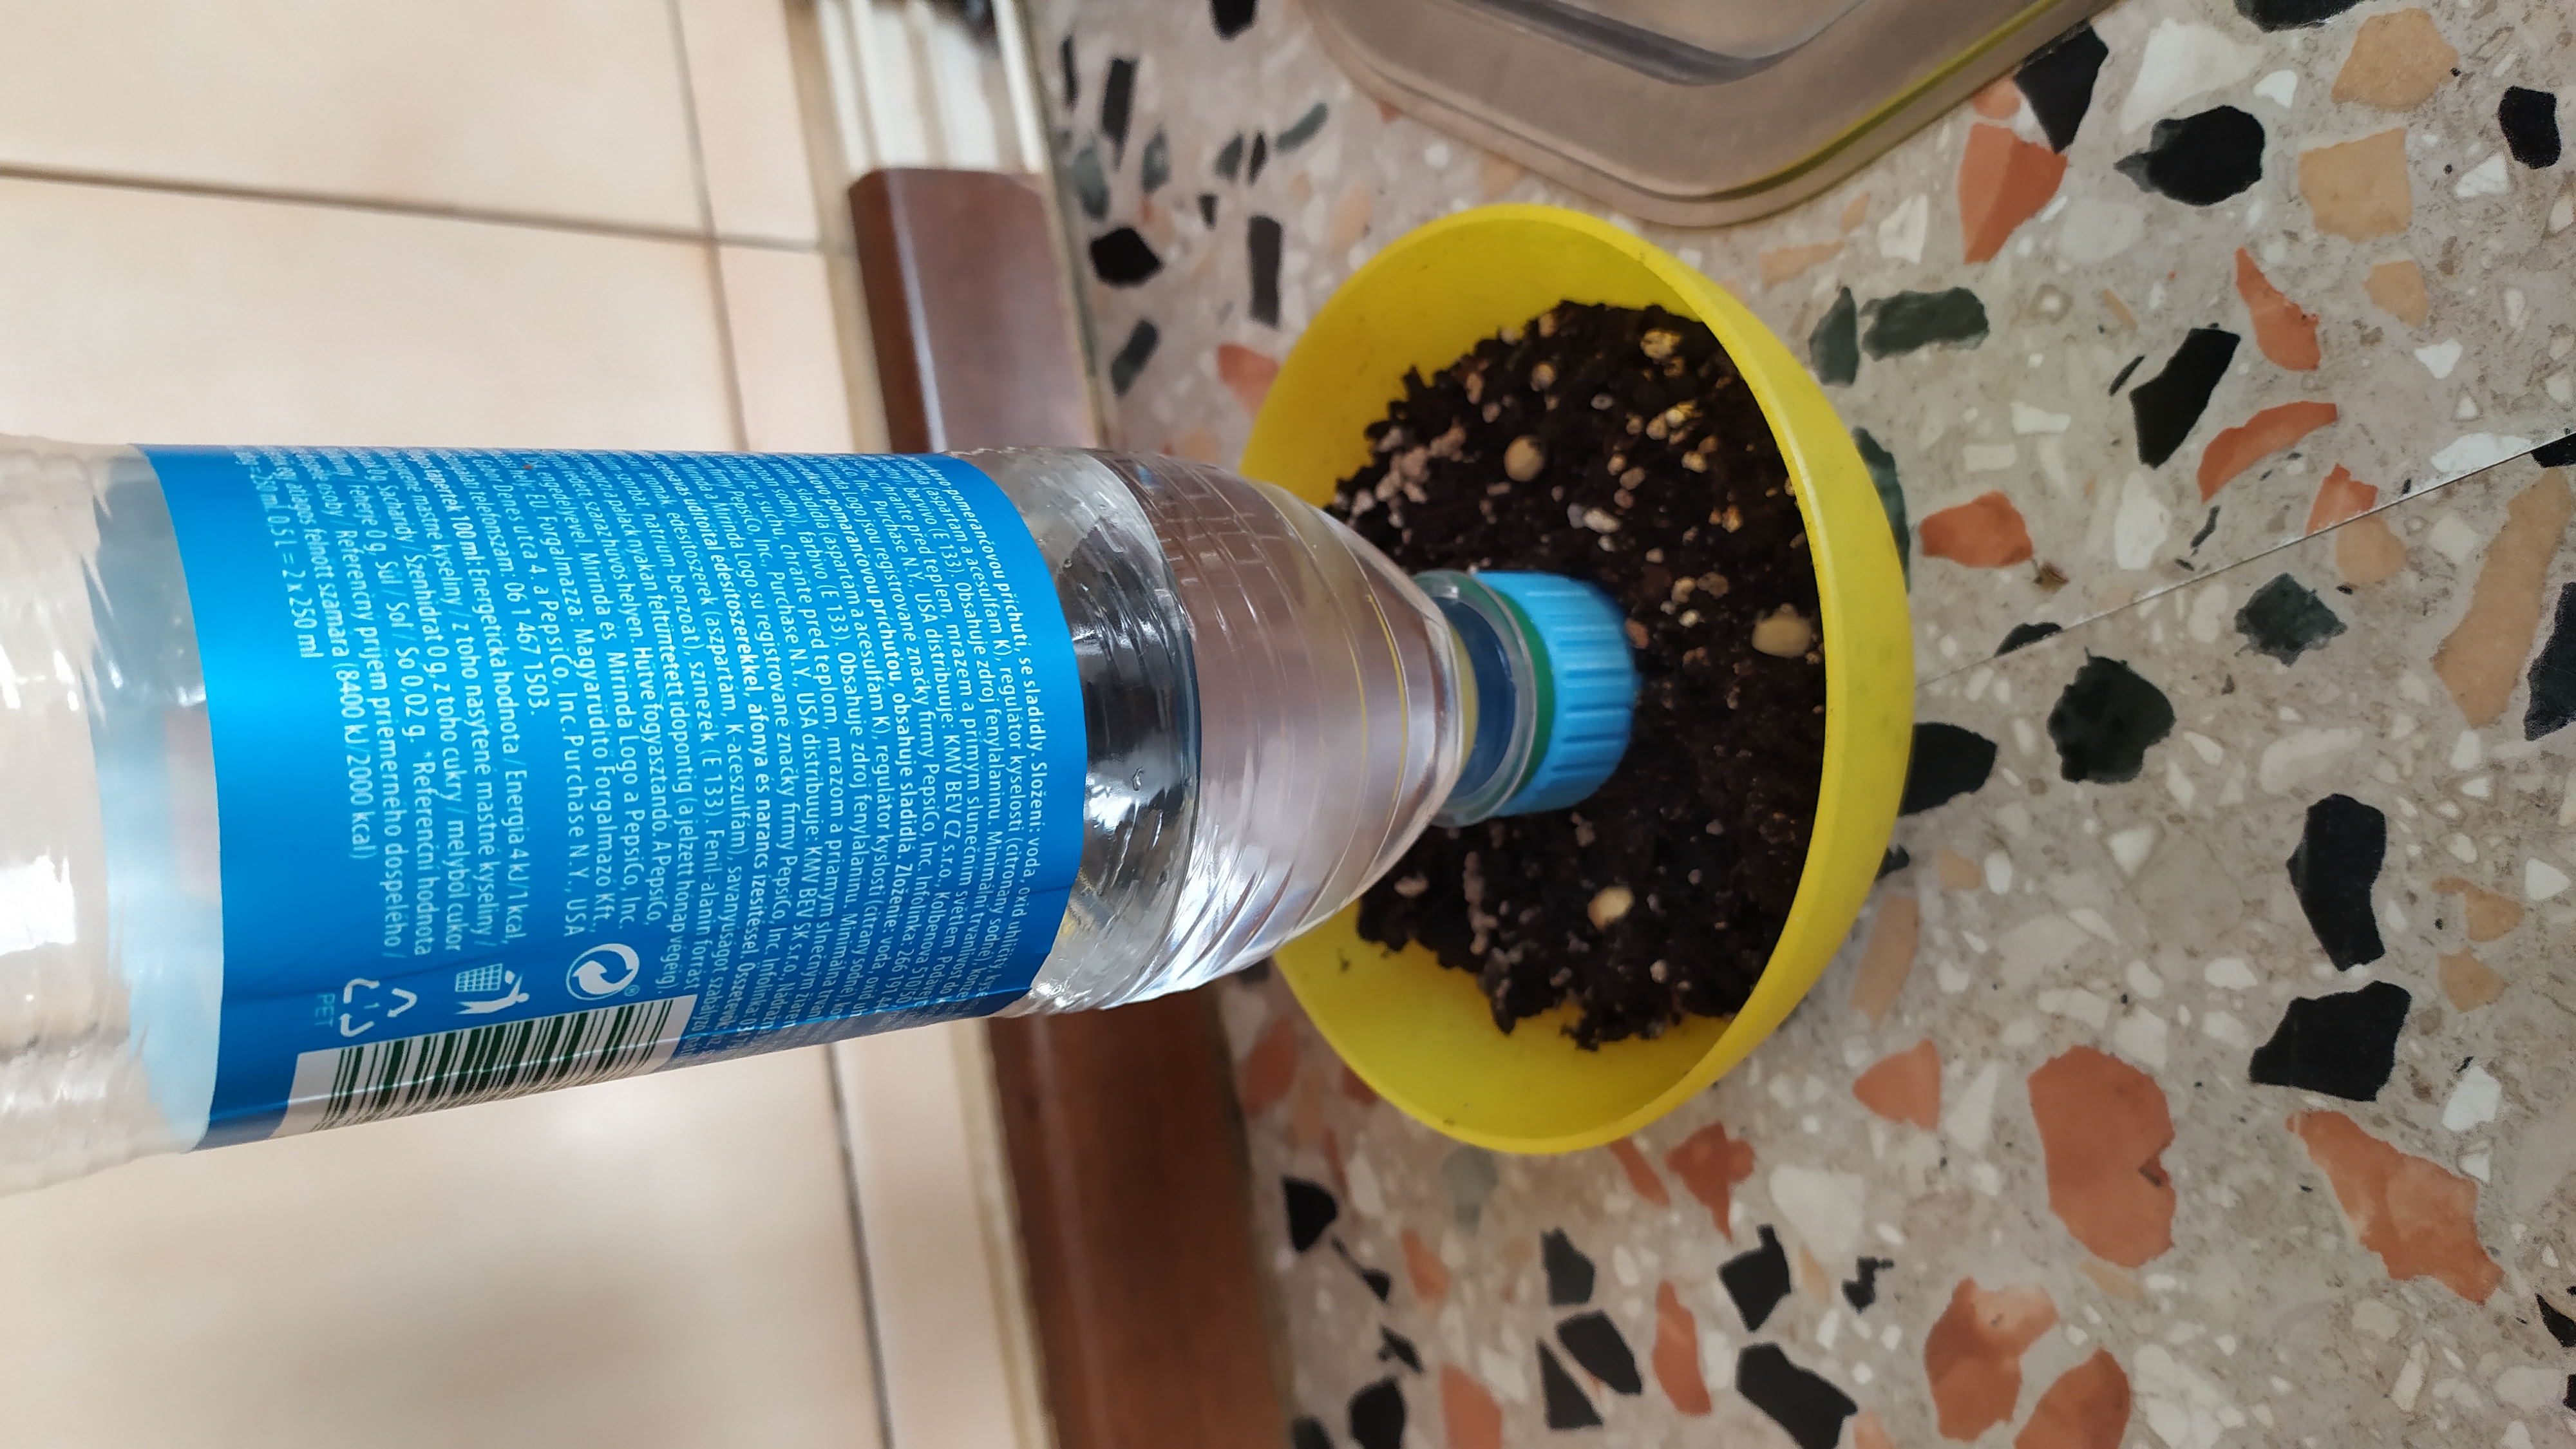 Self watering pet bottle